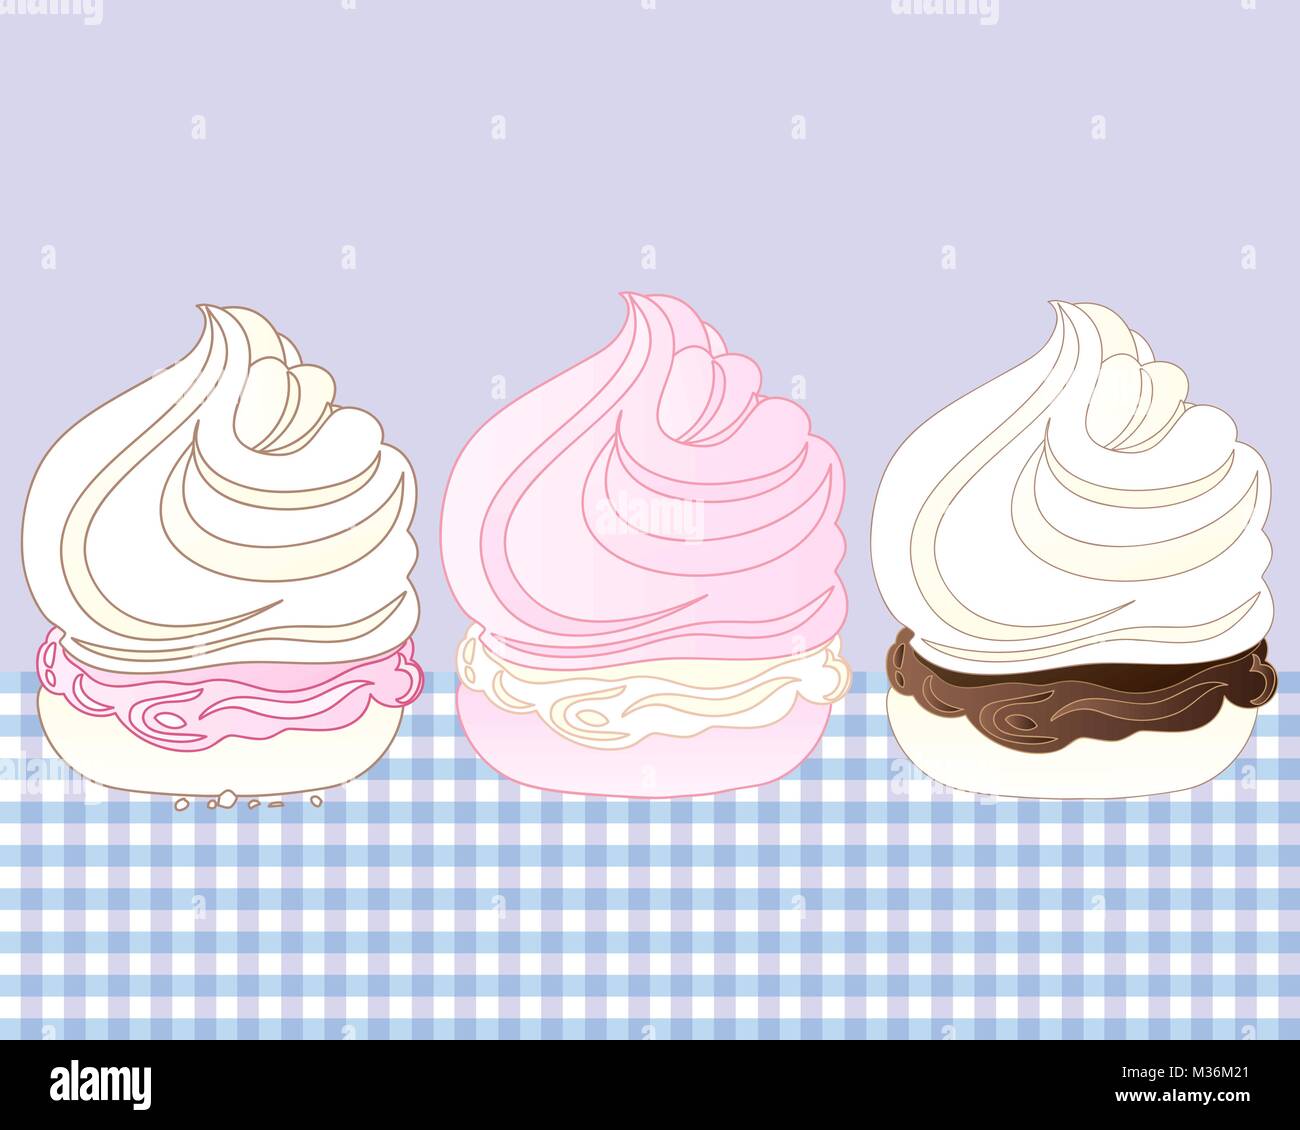 Une illustration de trois desserts meringue douce avec diverses saveurs sur une nappe en vichy Illustration de Vecteur